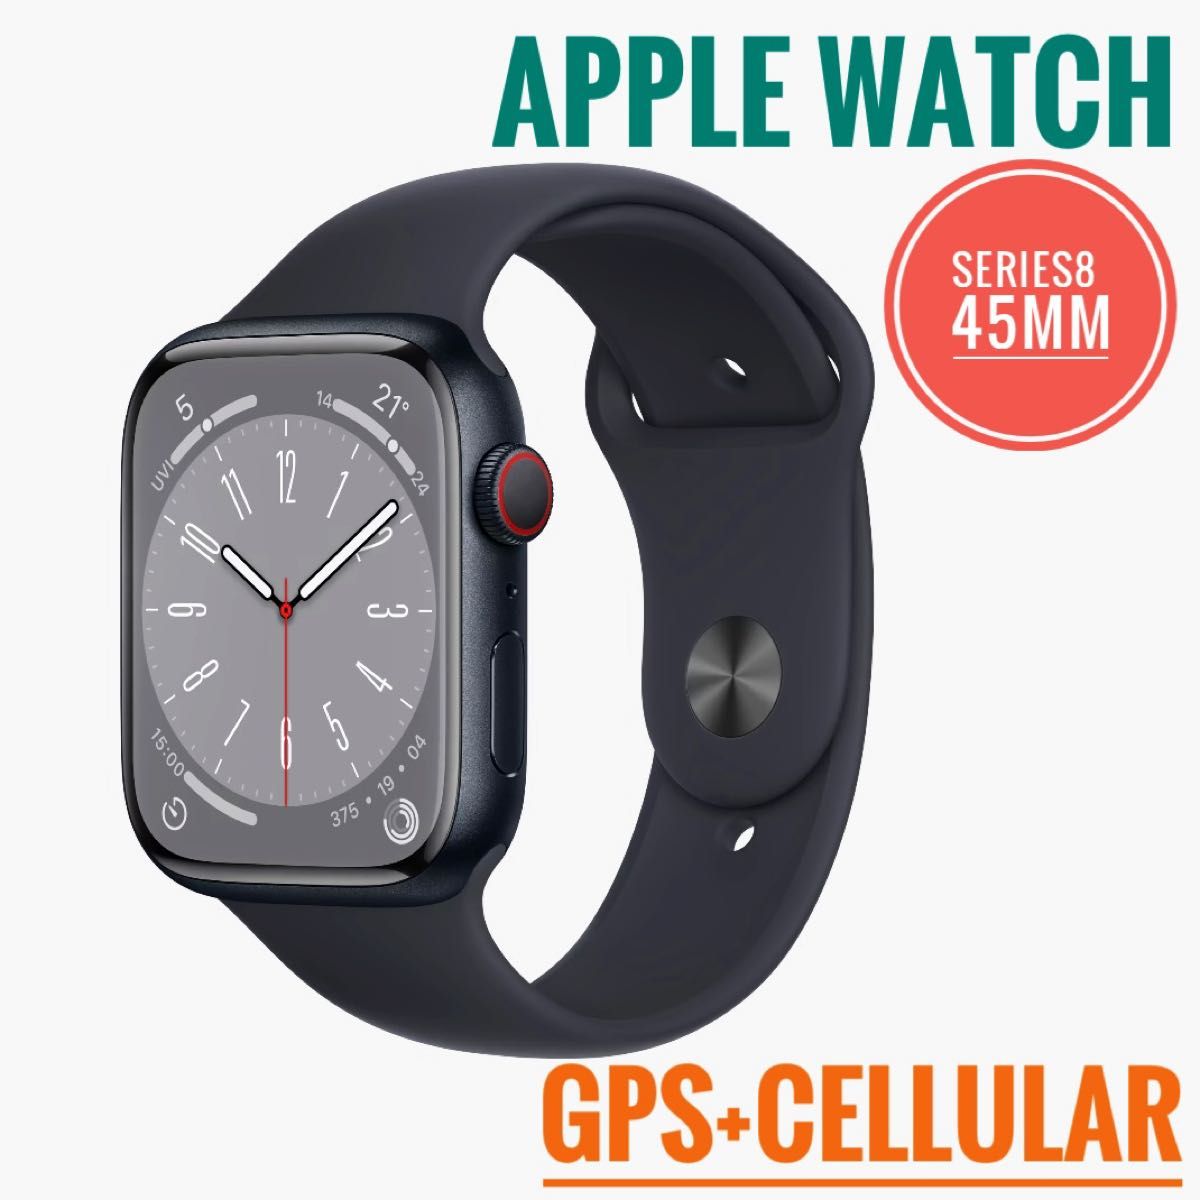 日本代理店正規品 おまけ付き Apple Watch series 7 GPS 45mm